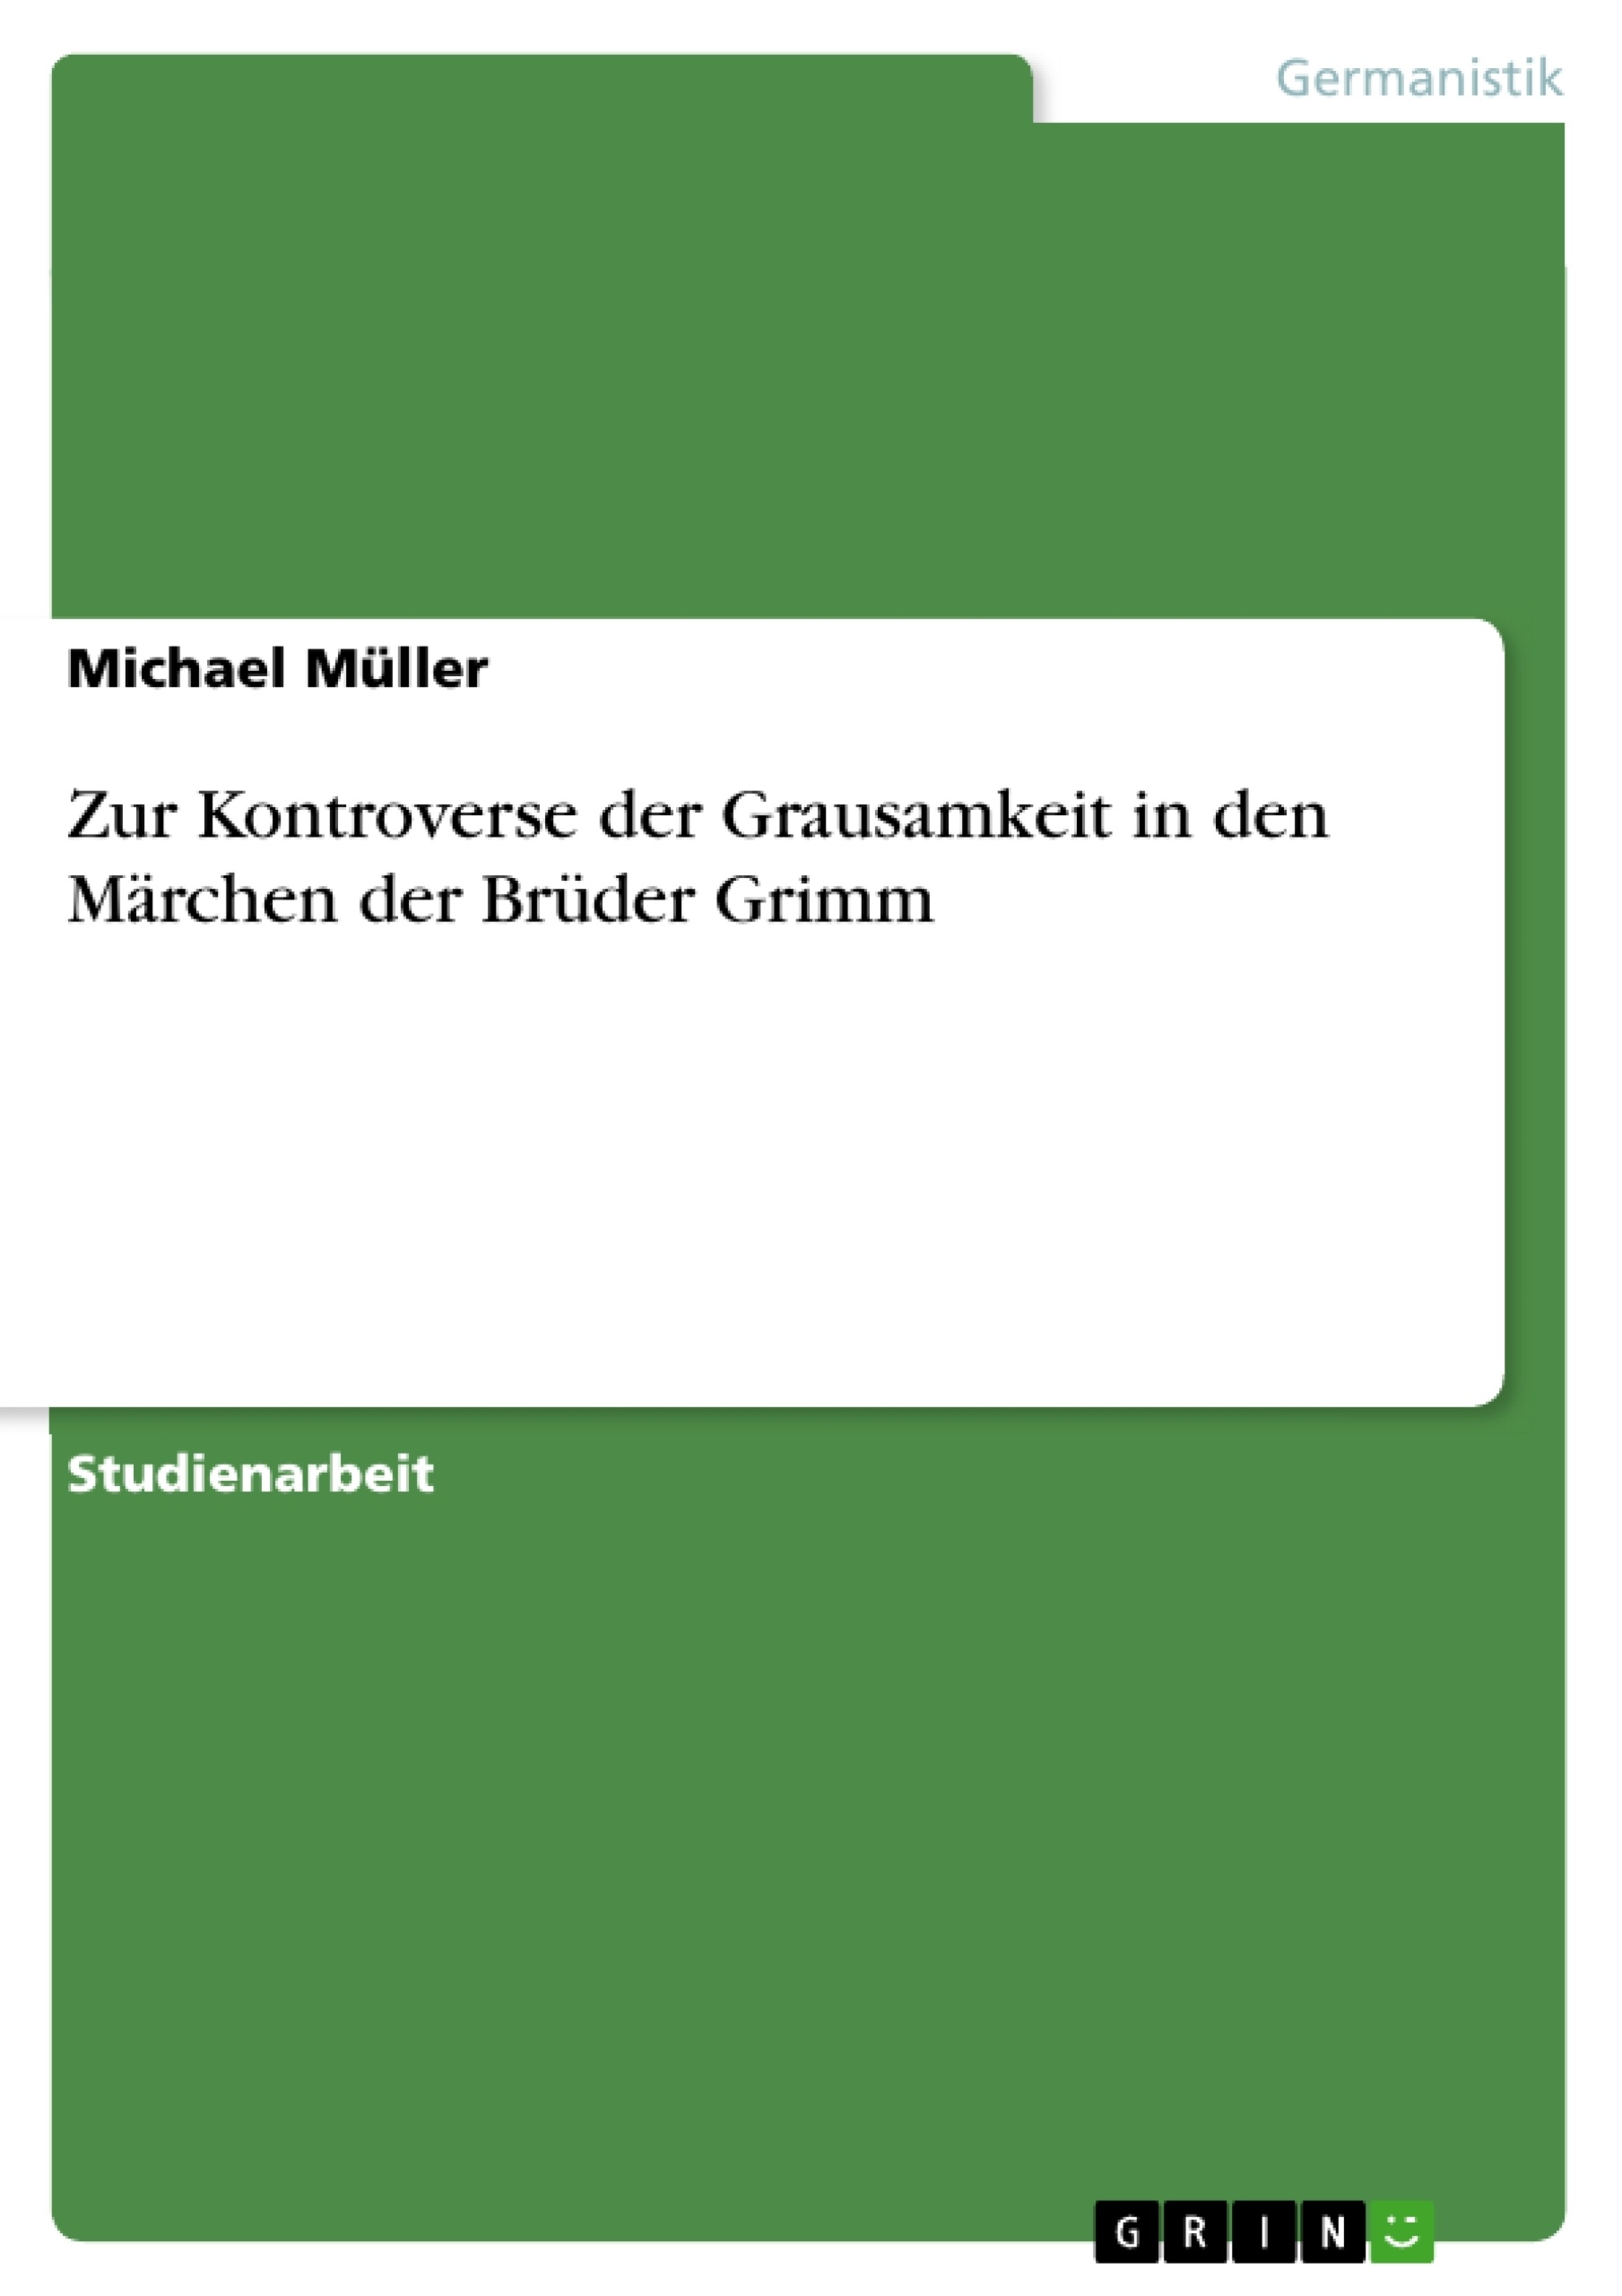 Titre: Zur Kontroverse der Grausamkeit in den Märchen der Brüder Grimm